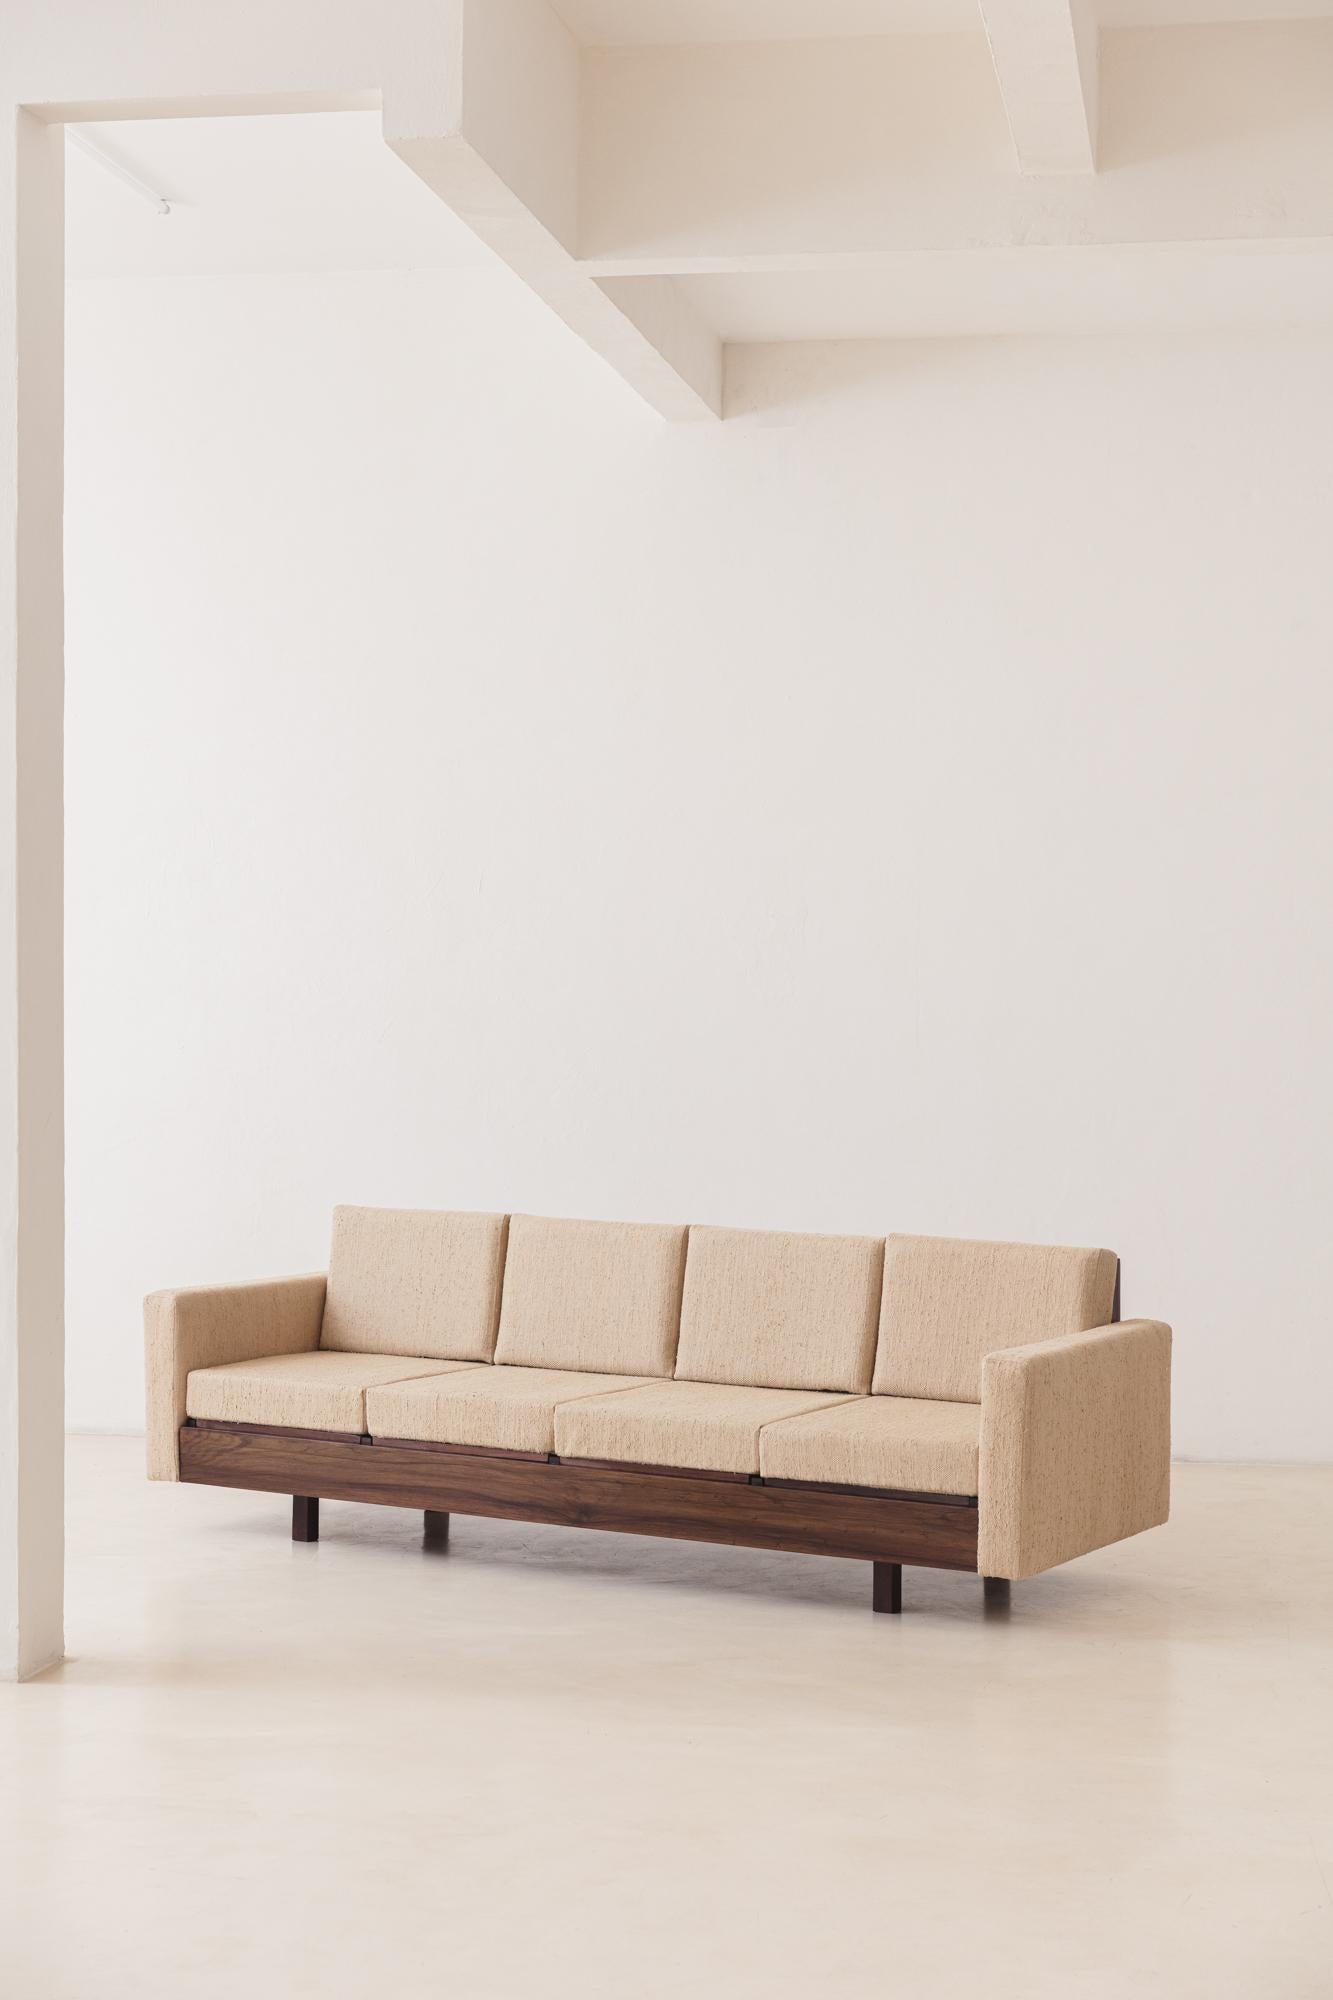 Silk Brazilian Rosewood Sofa by Celina Decorações, Midcentury Brazilian Design, 1960s For Sale